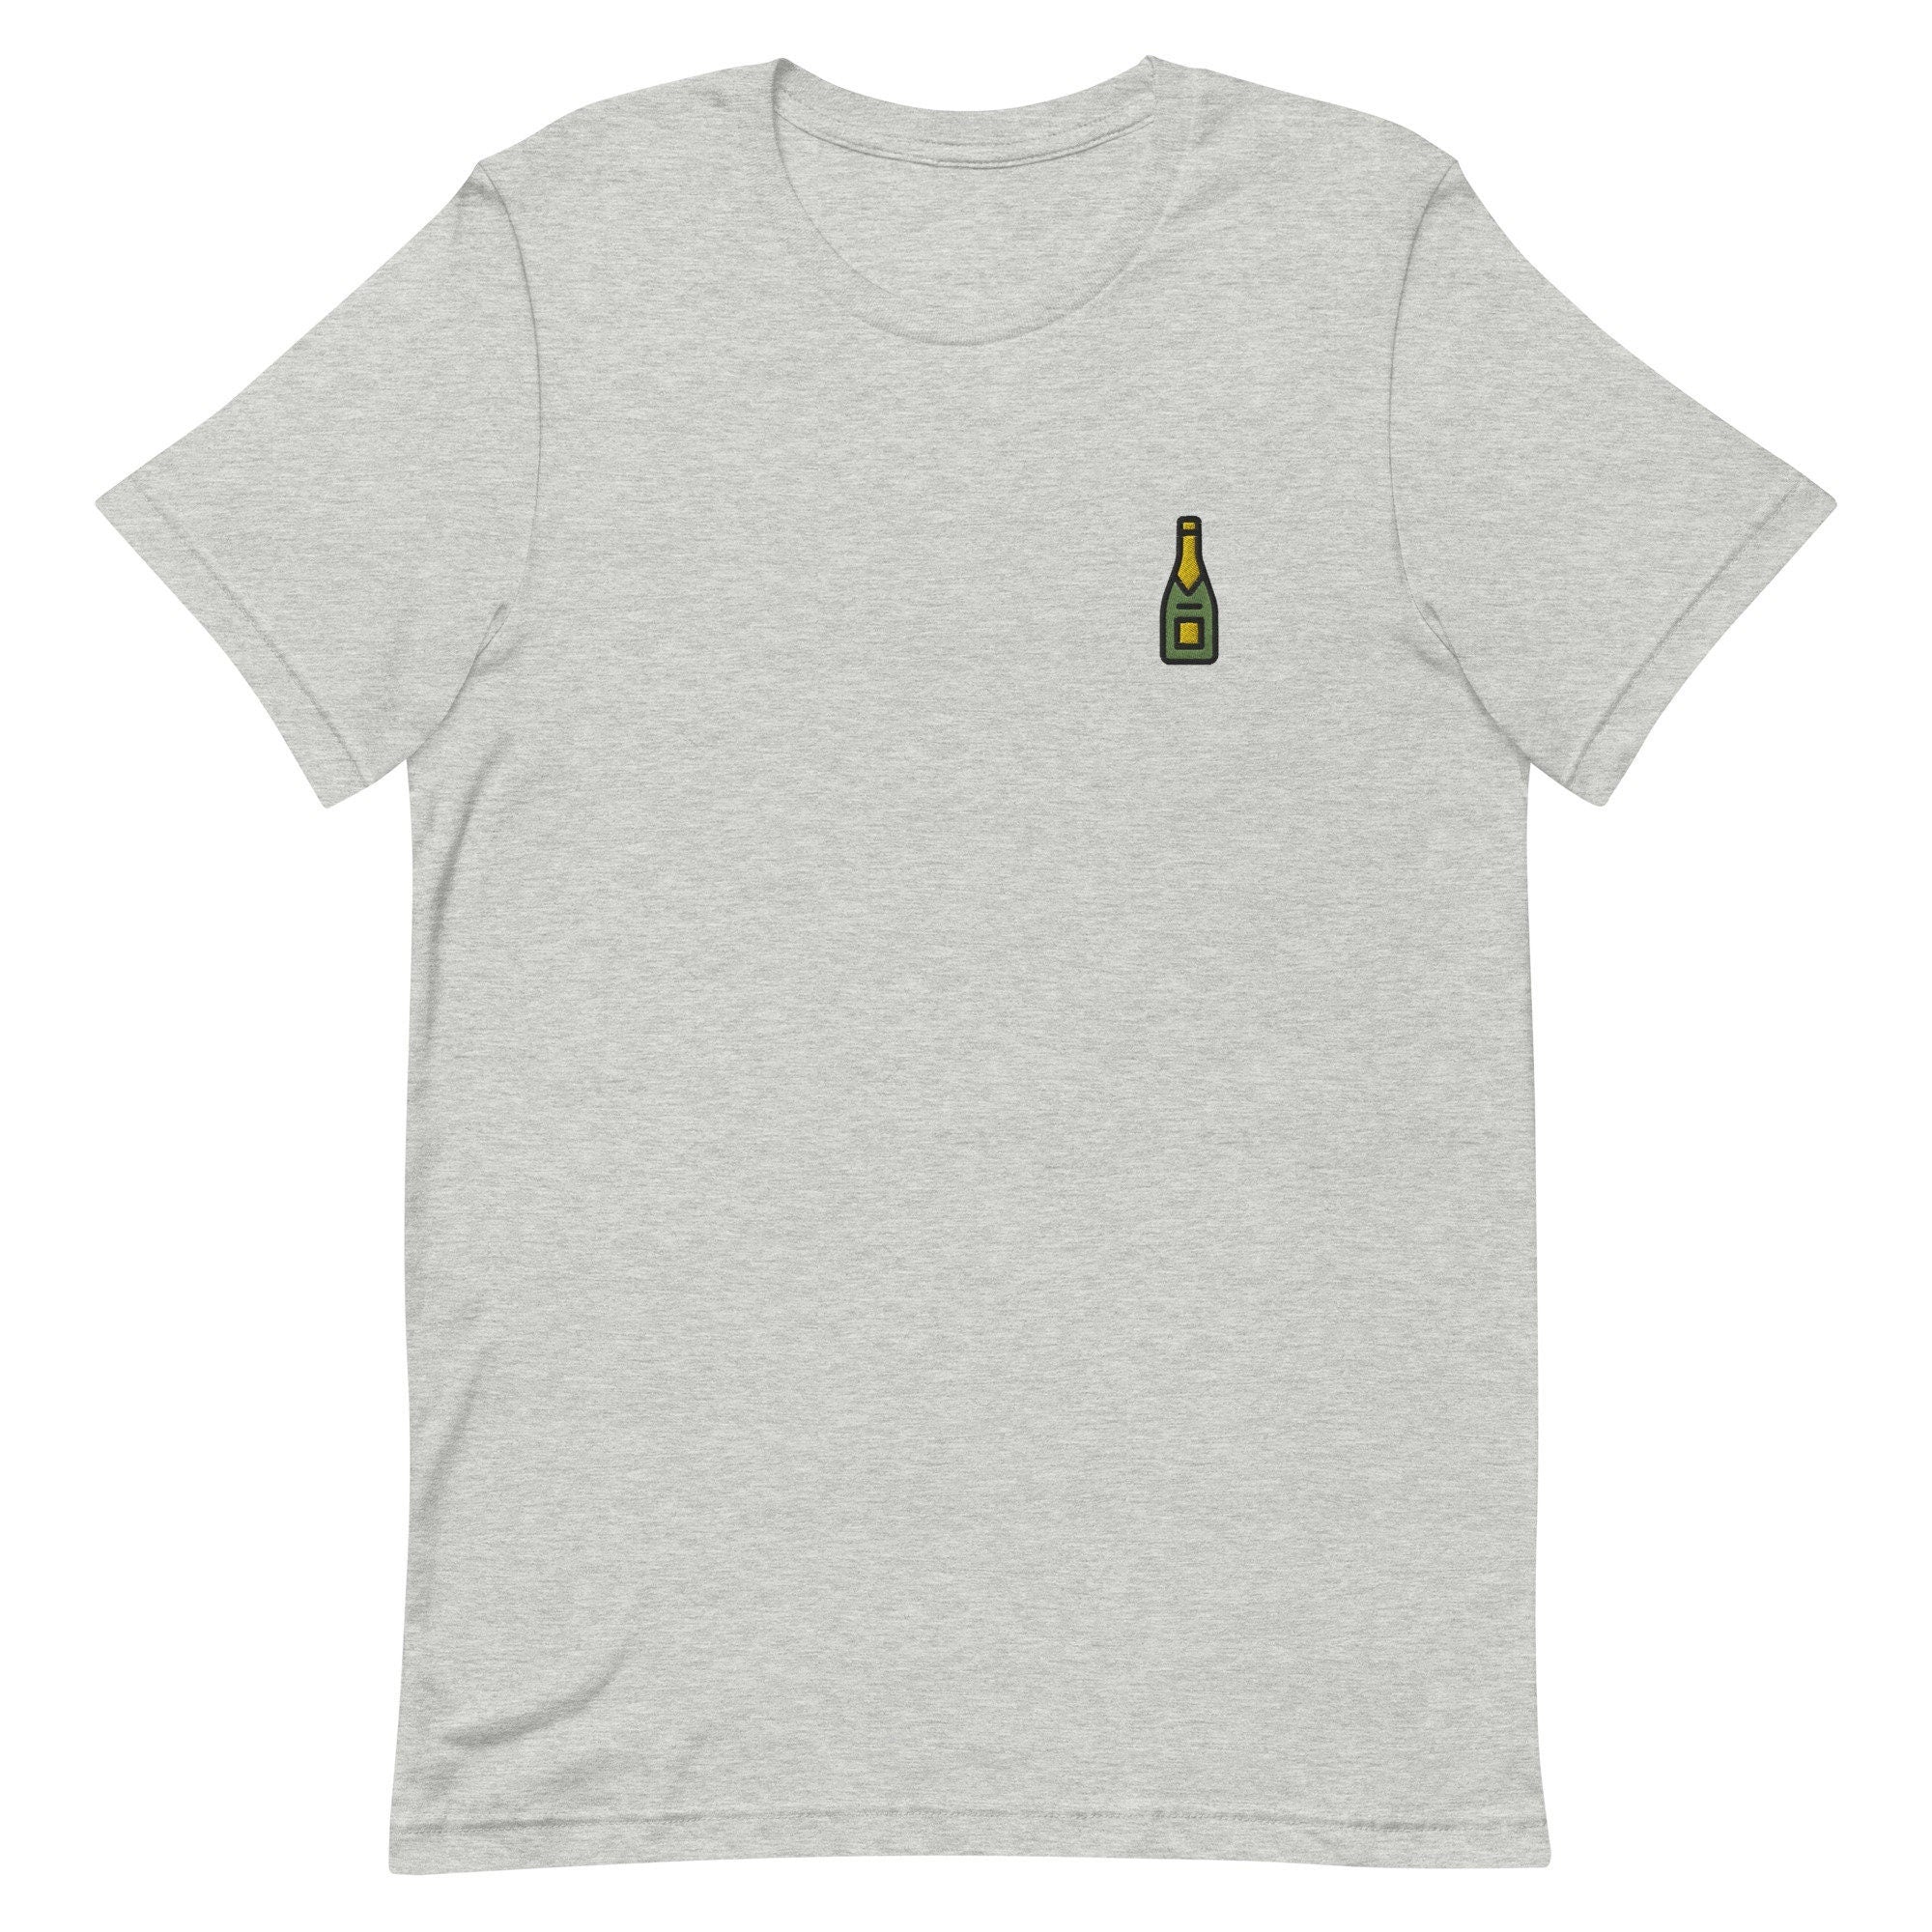 Champagne Premium Men's T-Shirt, Embroidered Men's T-Shirt Gift for Boyfriend, Men's Short Sleeve Shirt - Multiple Colors